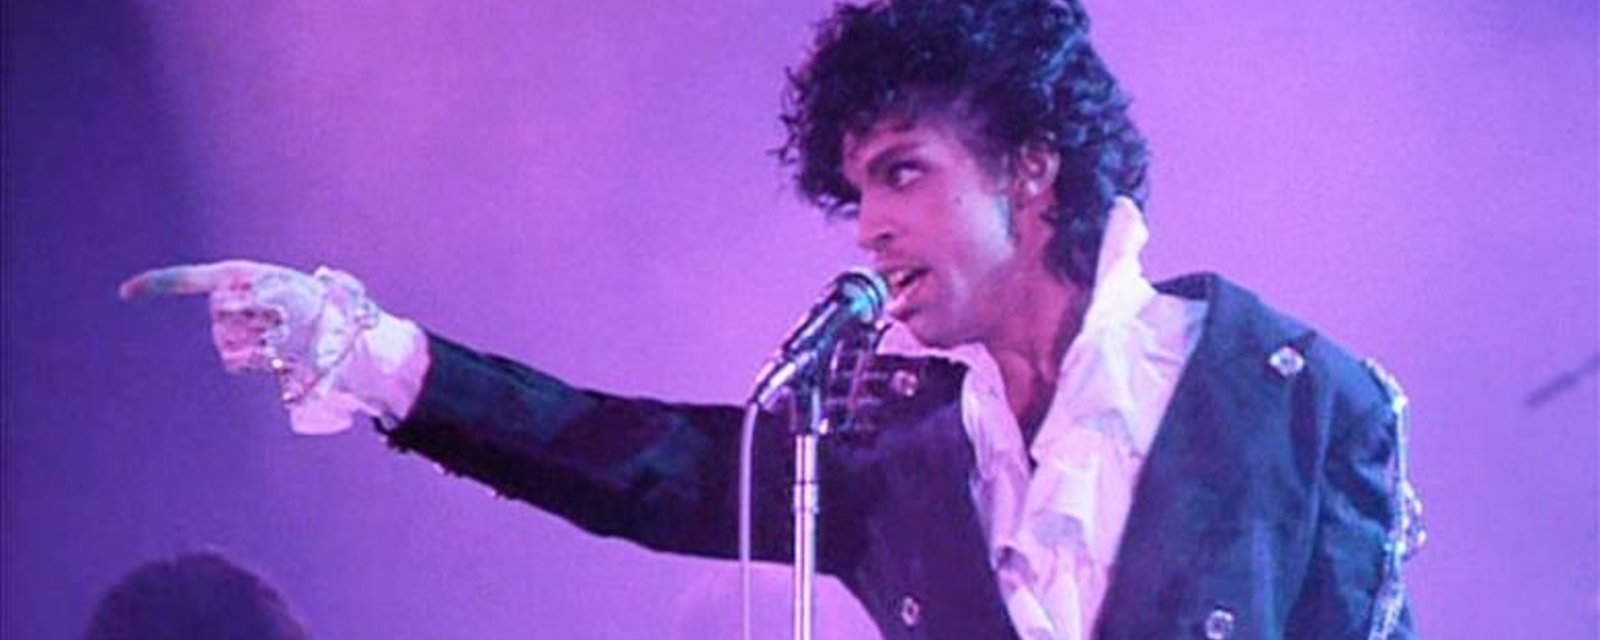 Le célèbre chanteur Prince est décédé